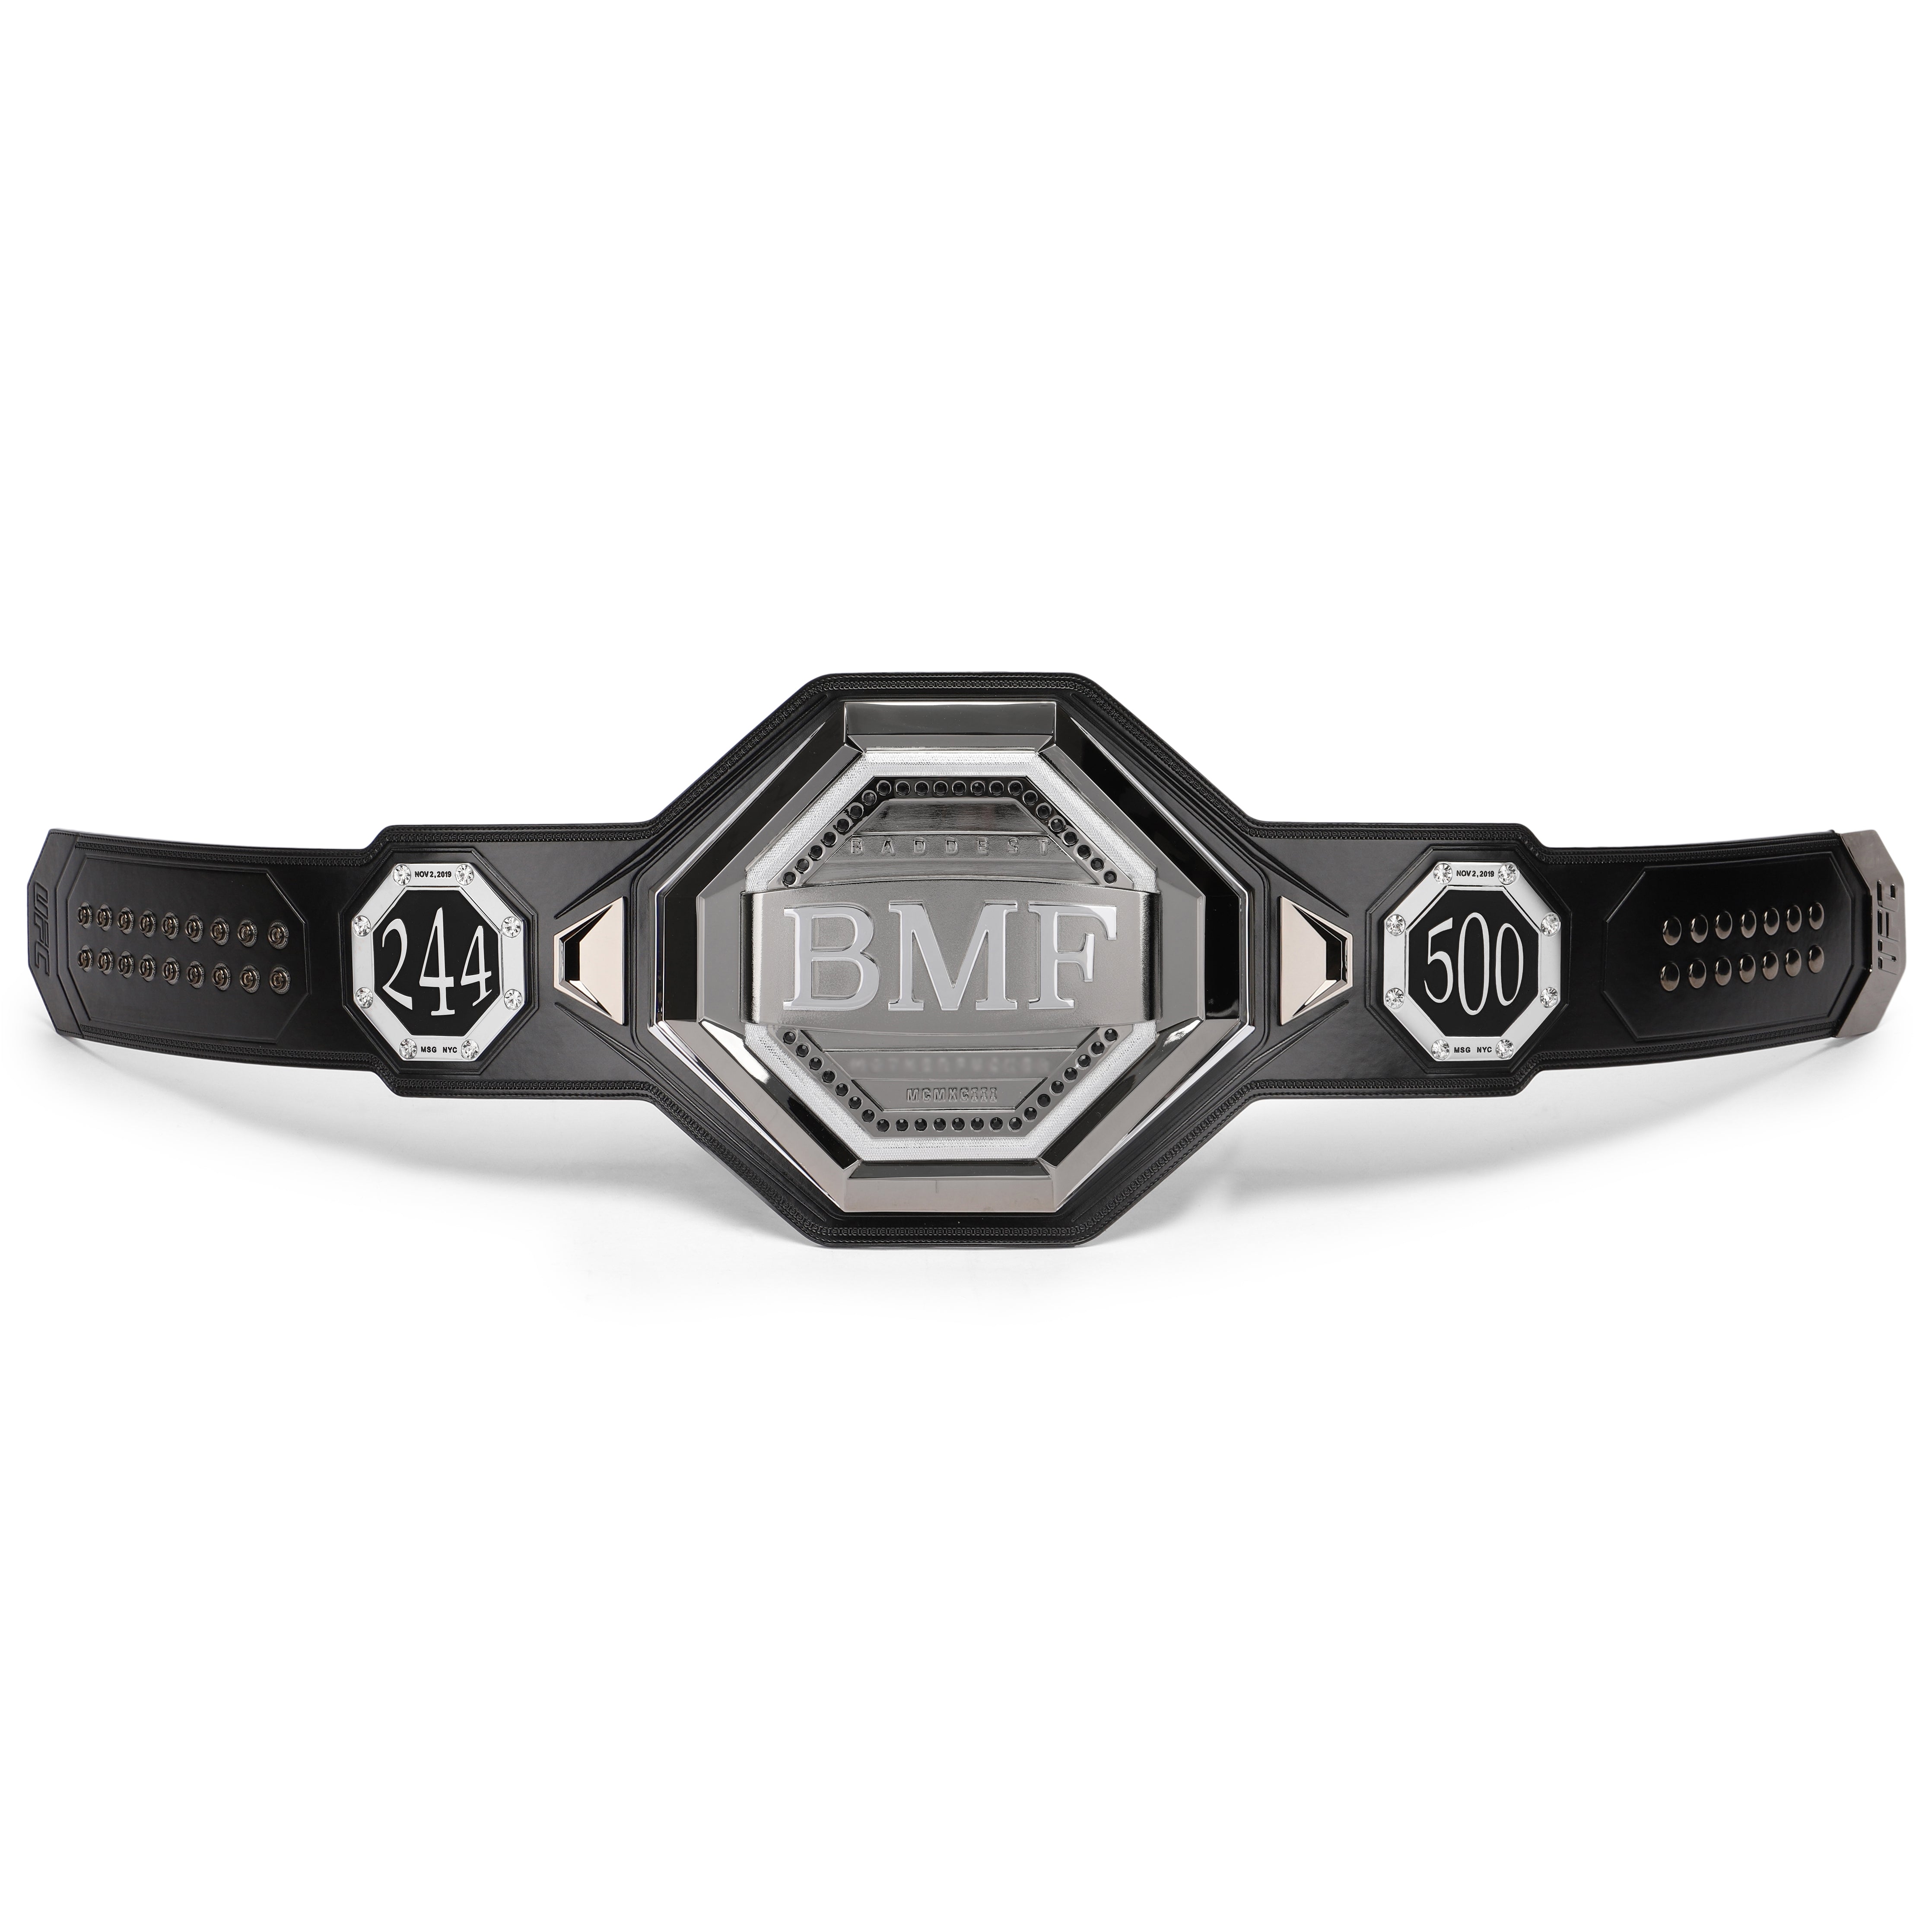 UFC BMF replica belt